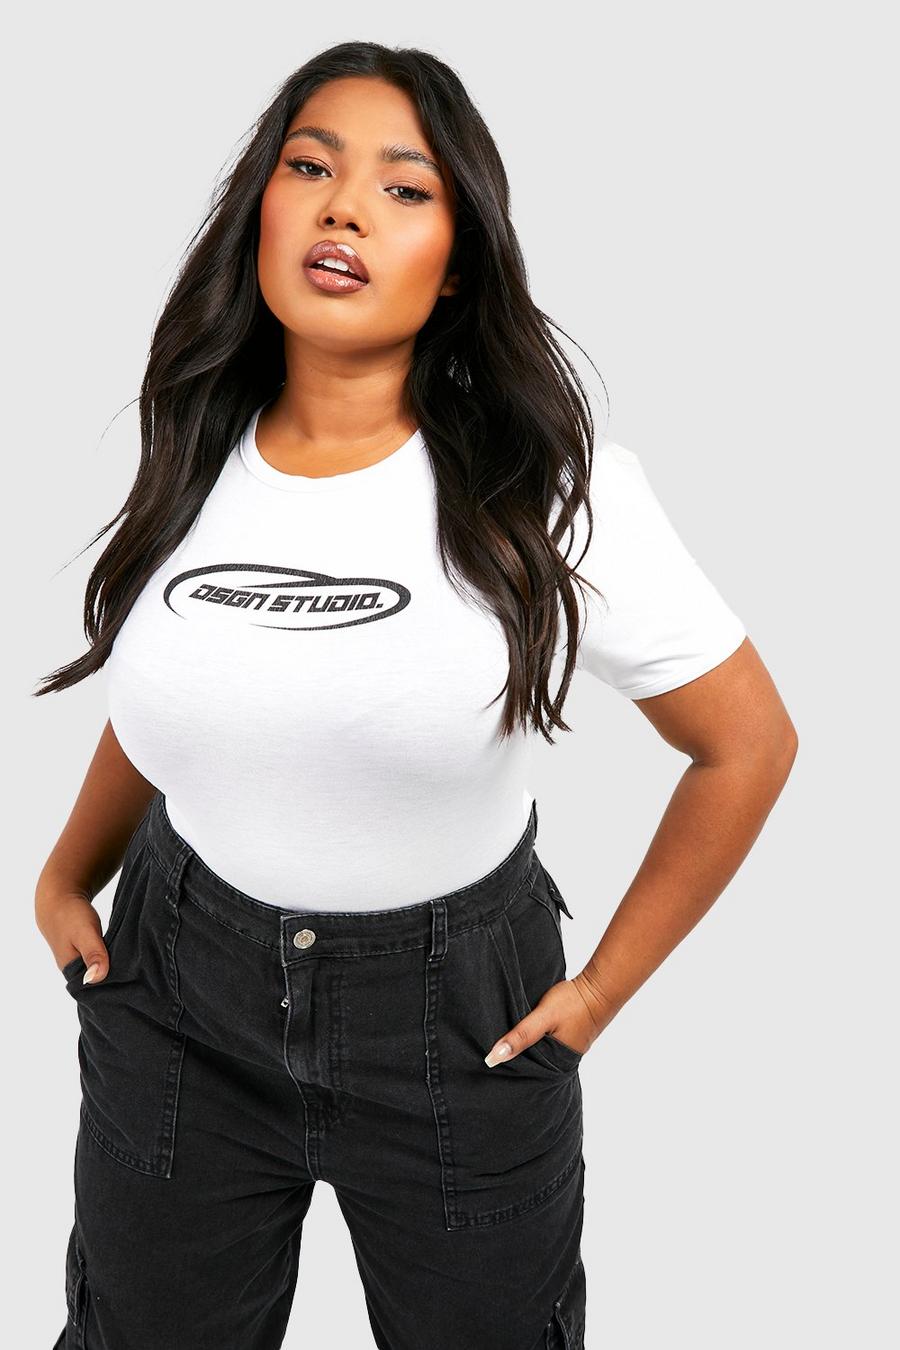 Camiseta Plus ajustada con logo Dsgn Studio, Charcoal